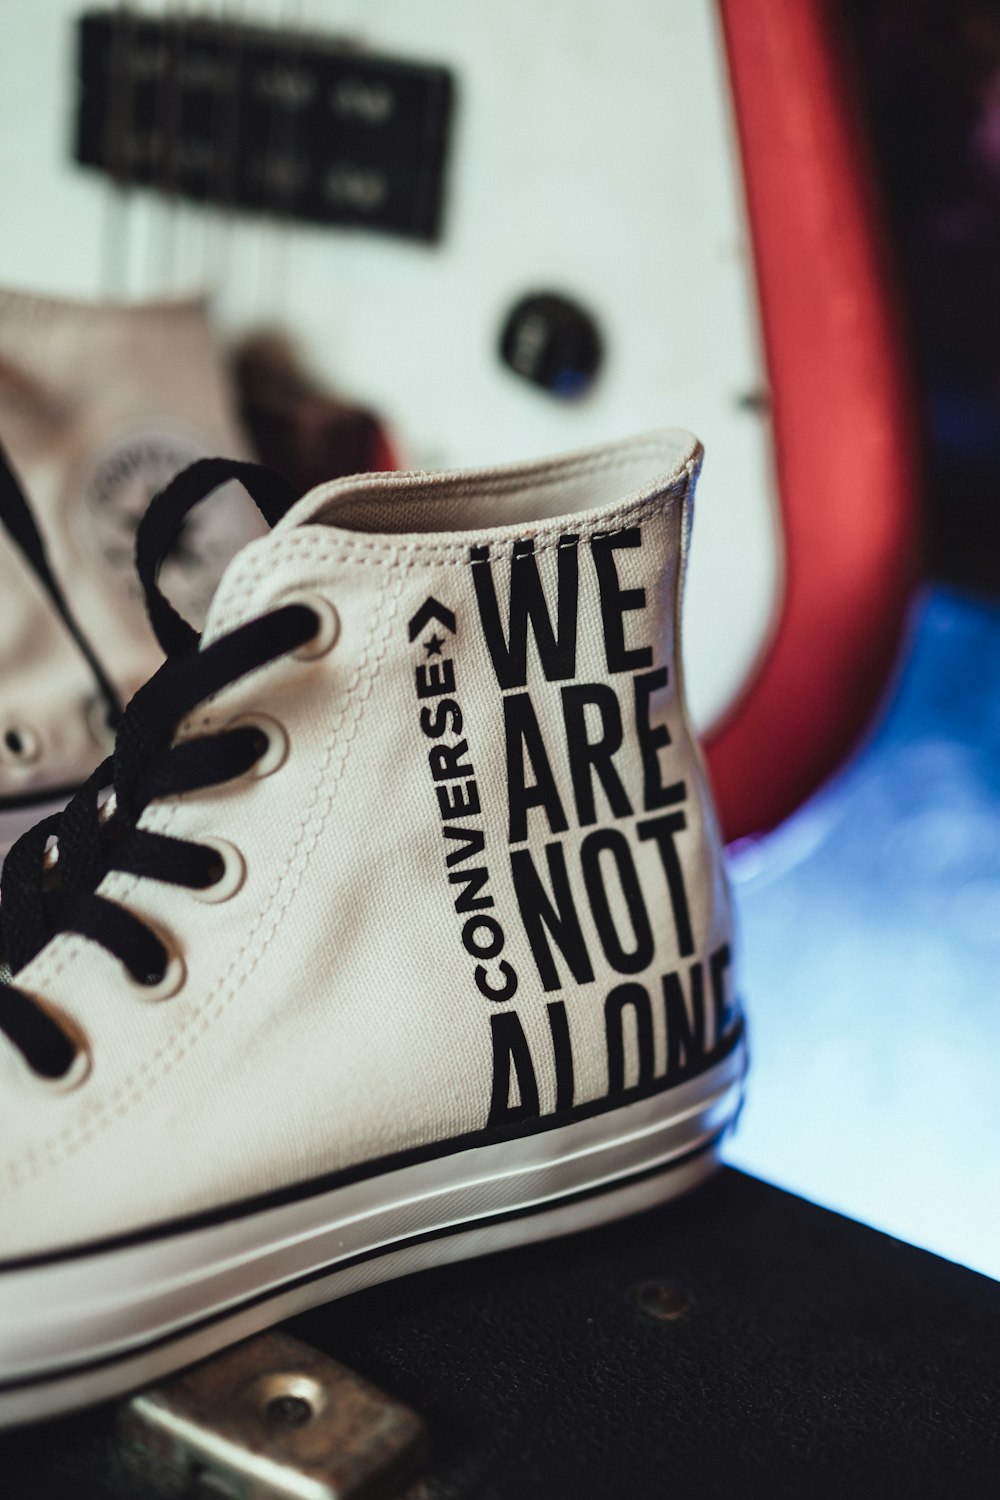 Foto zapatillas altas blancas y negras de Converse – Imagen No estamos  solos gratis en Unsplash